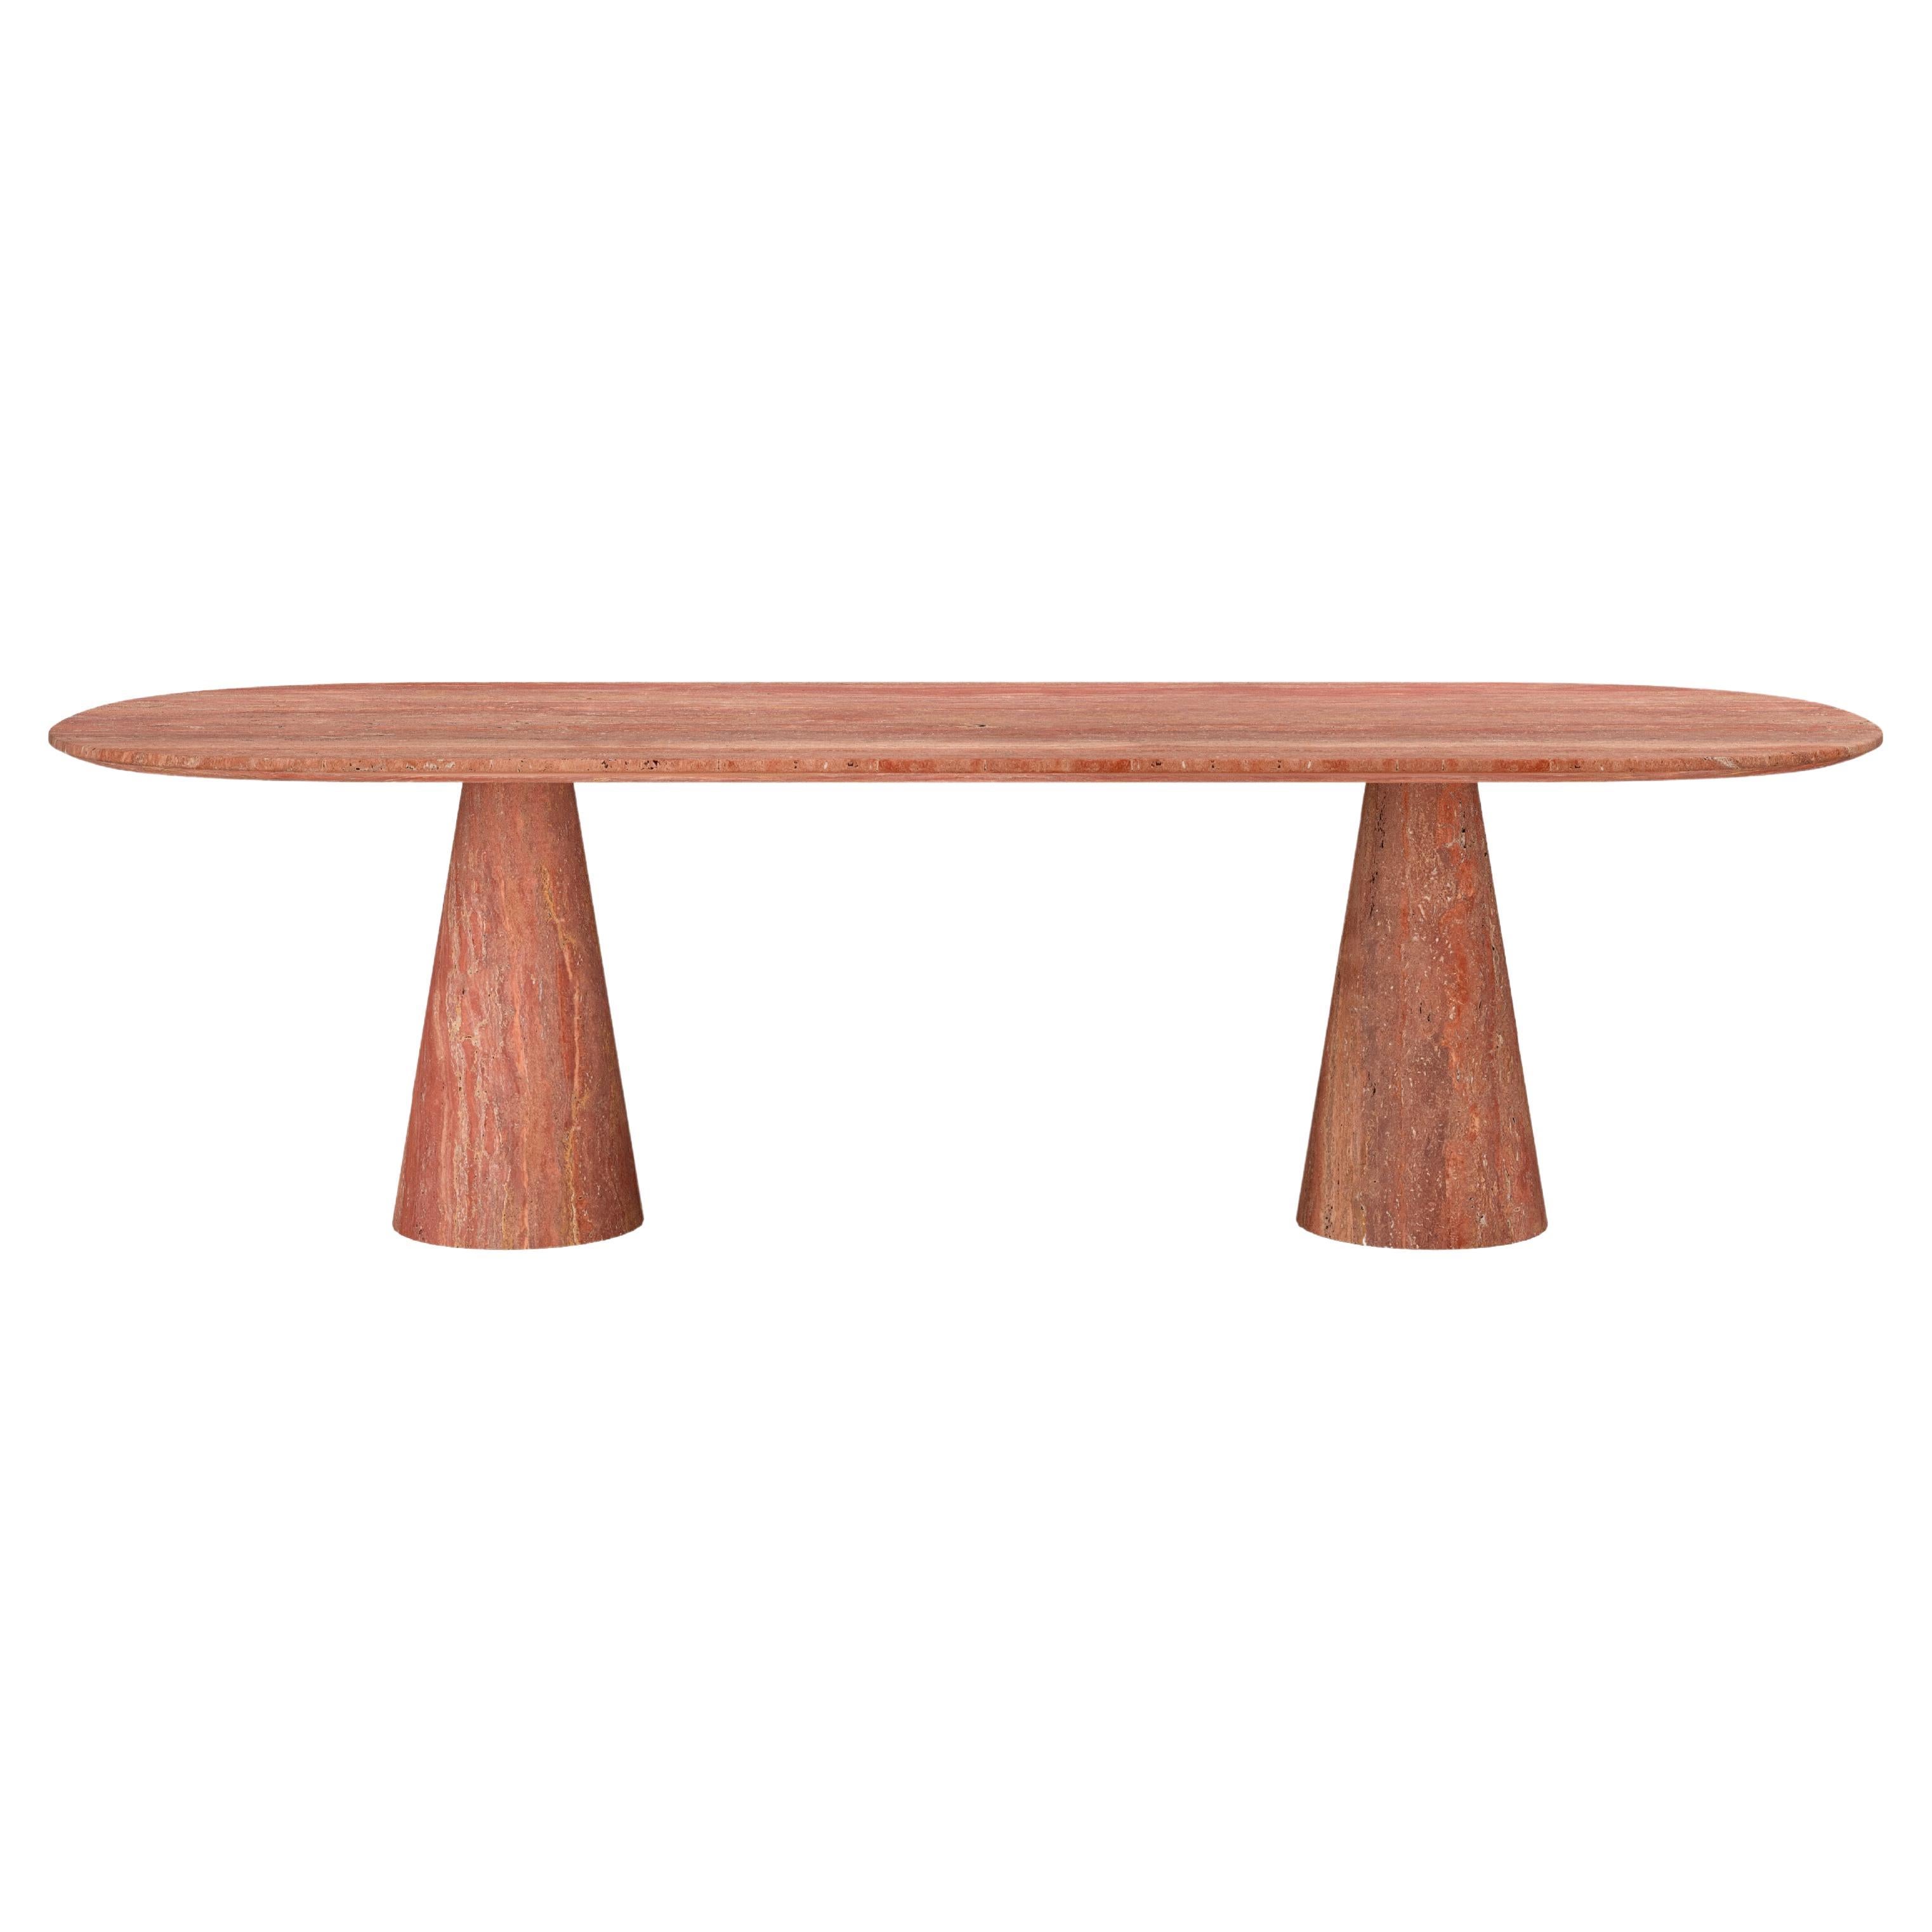 FORM(LA) Cono Oval Dining Table 84”L x 42”W x 30”H Travertino Rosso VC For Sale